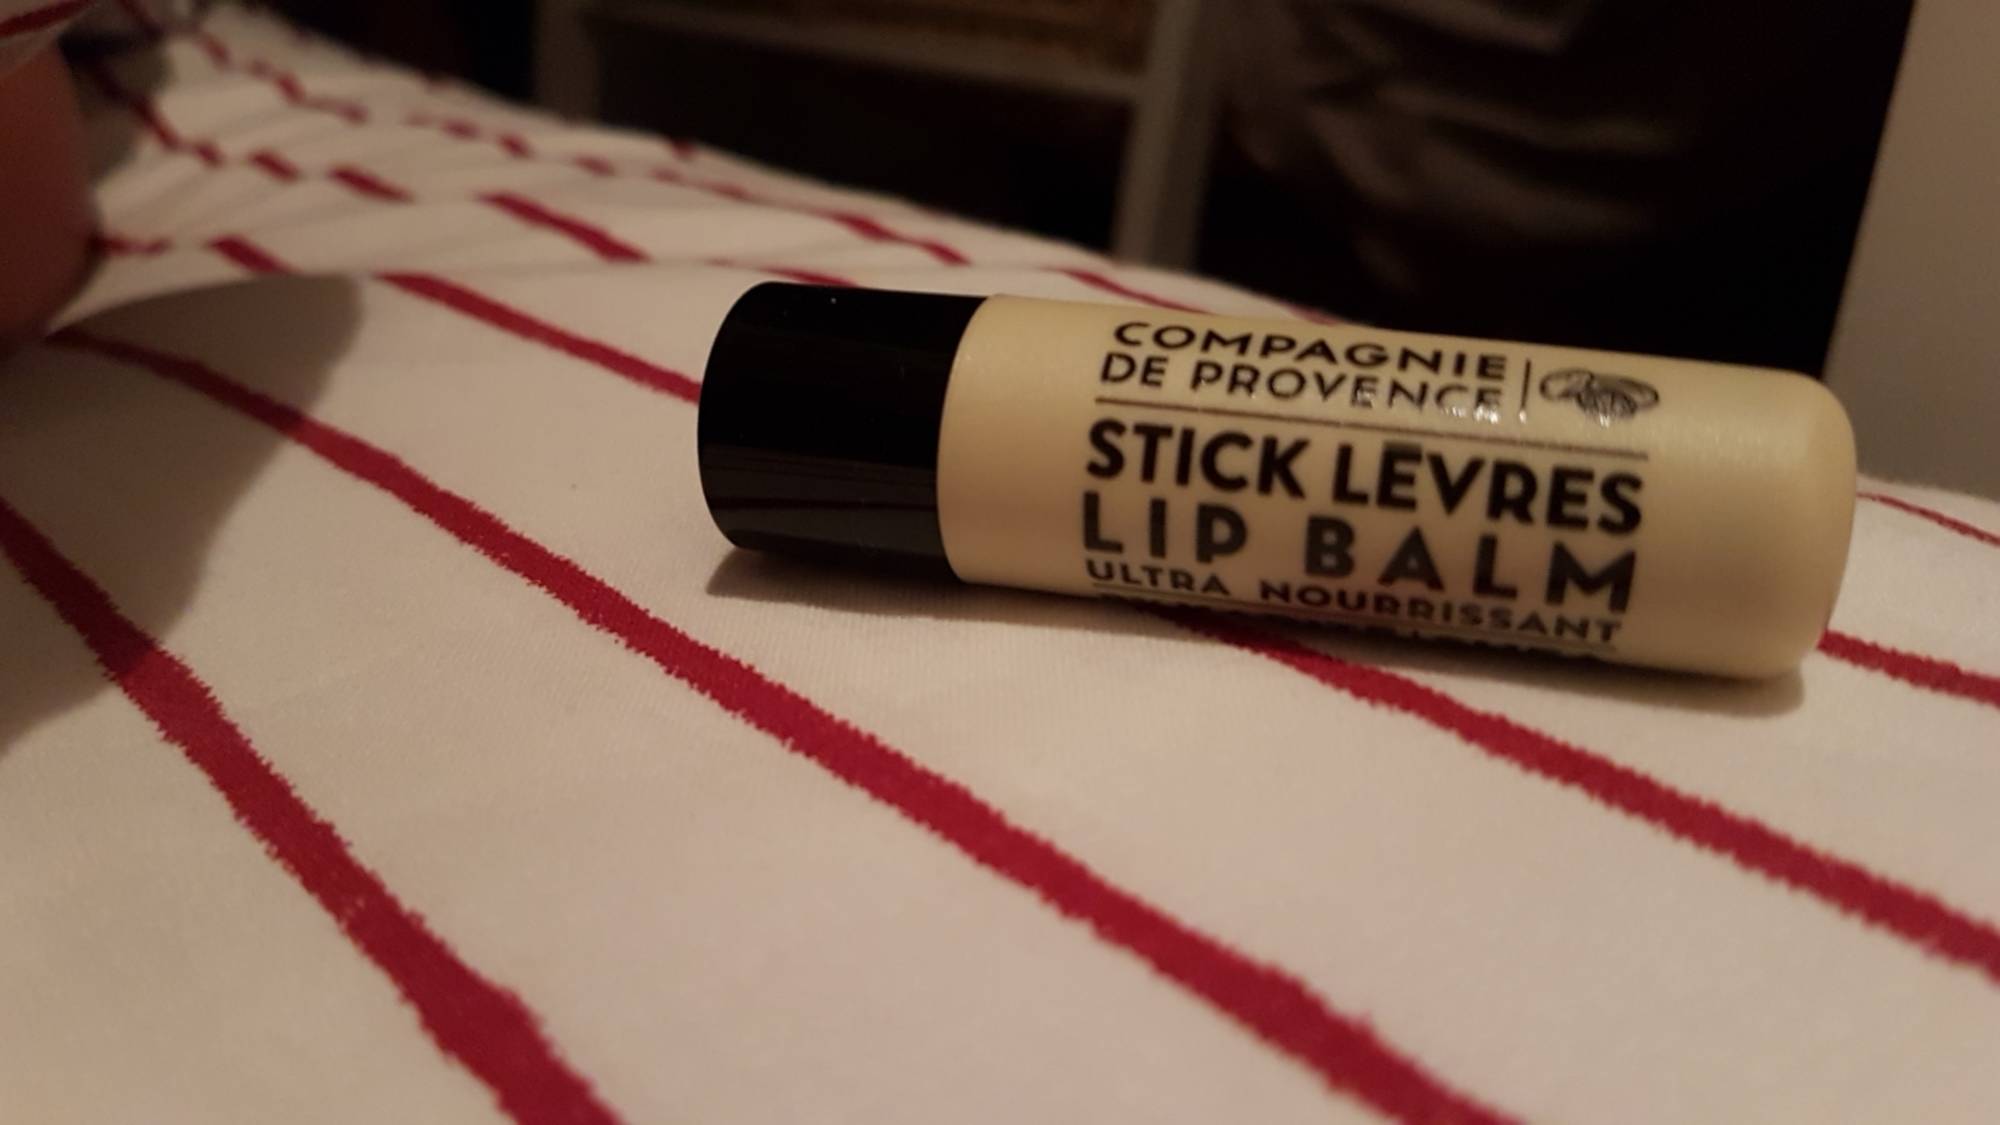 COMPAGNIE DE PROVENCE - Stick lèvres ultra nourrissant